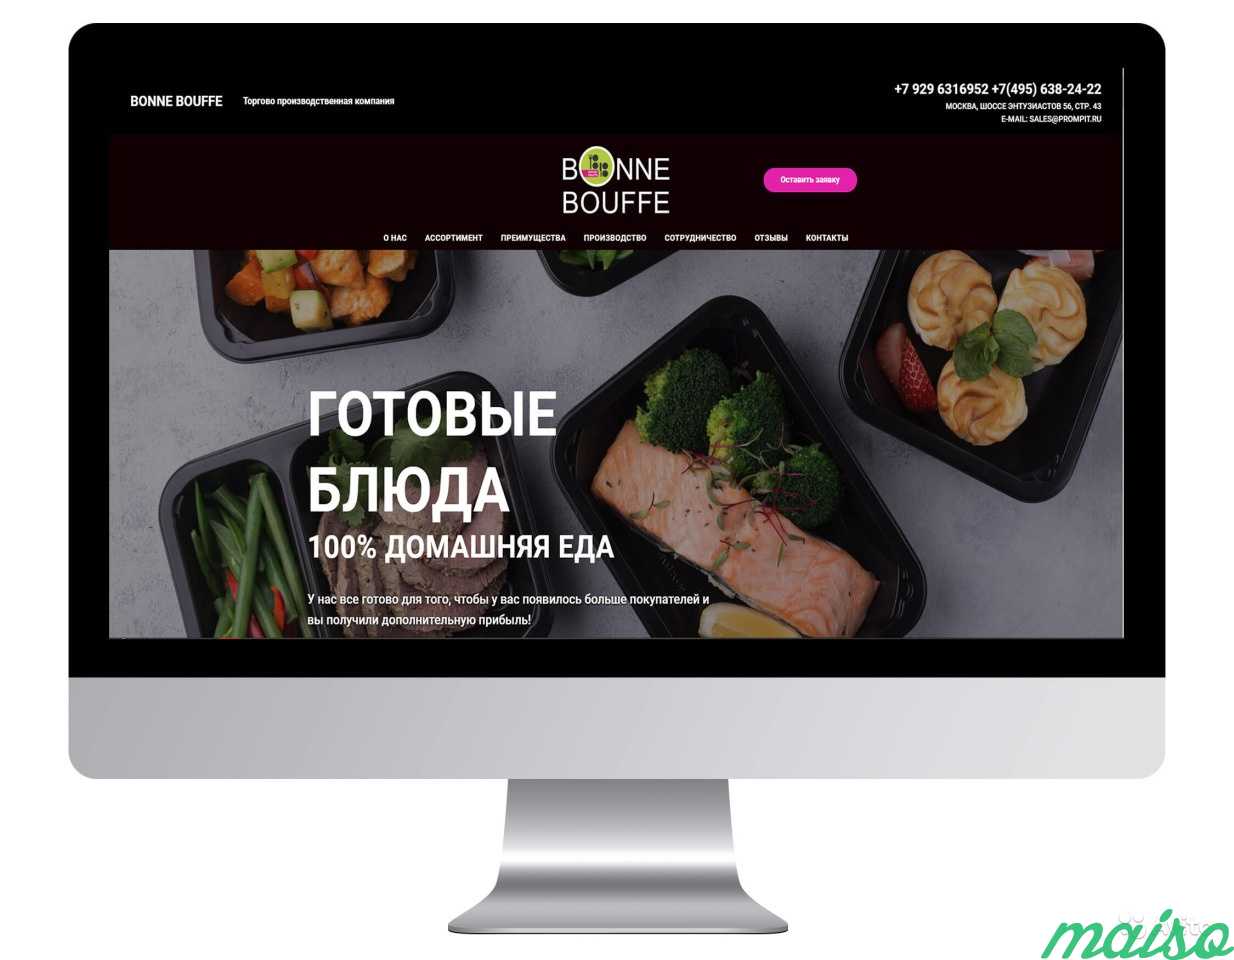 Создание сайта и логотипа в Москве. Фото 4